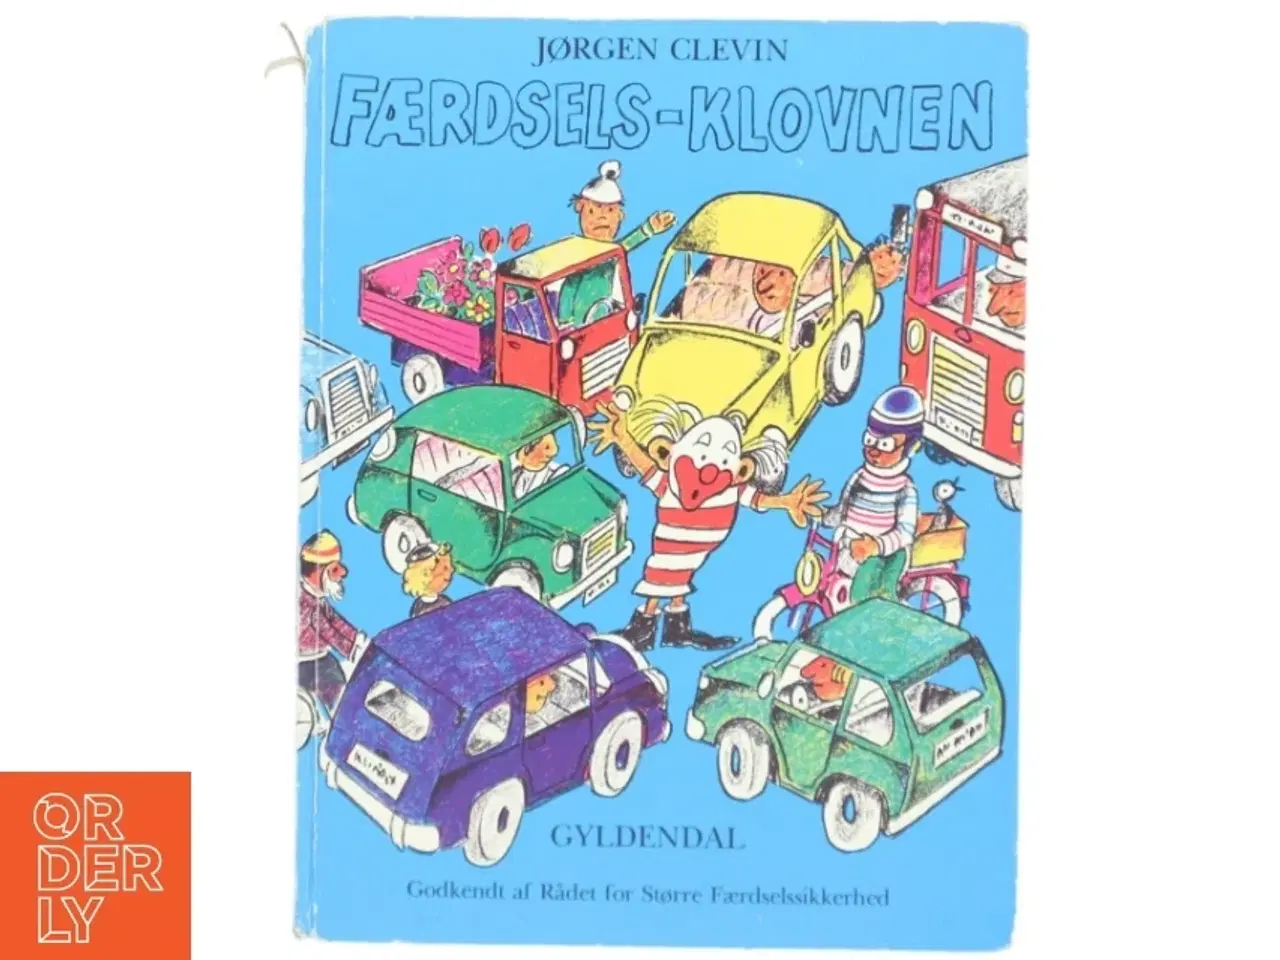 Billede 1 - 'Færdsels-klovnen' af Jørgen Clevin (bog) fra Gyldendal